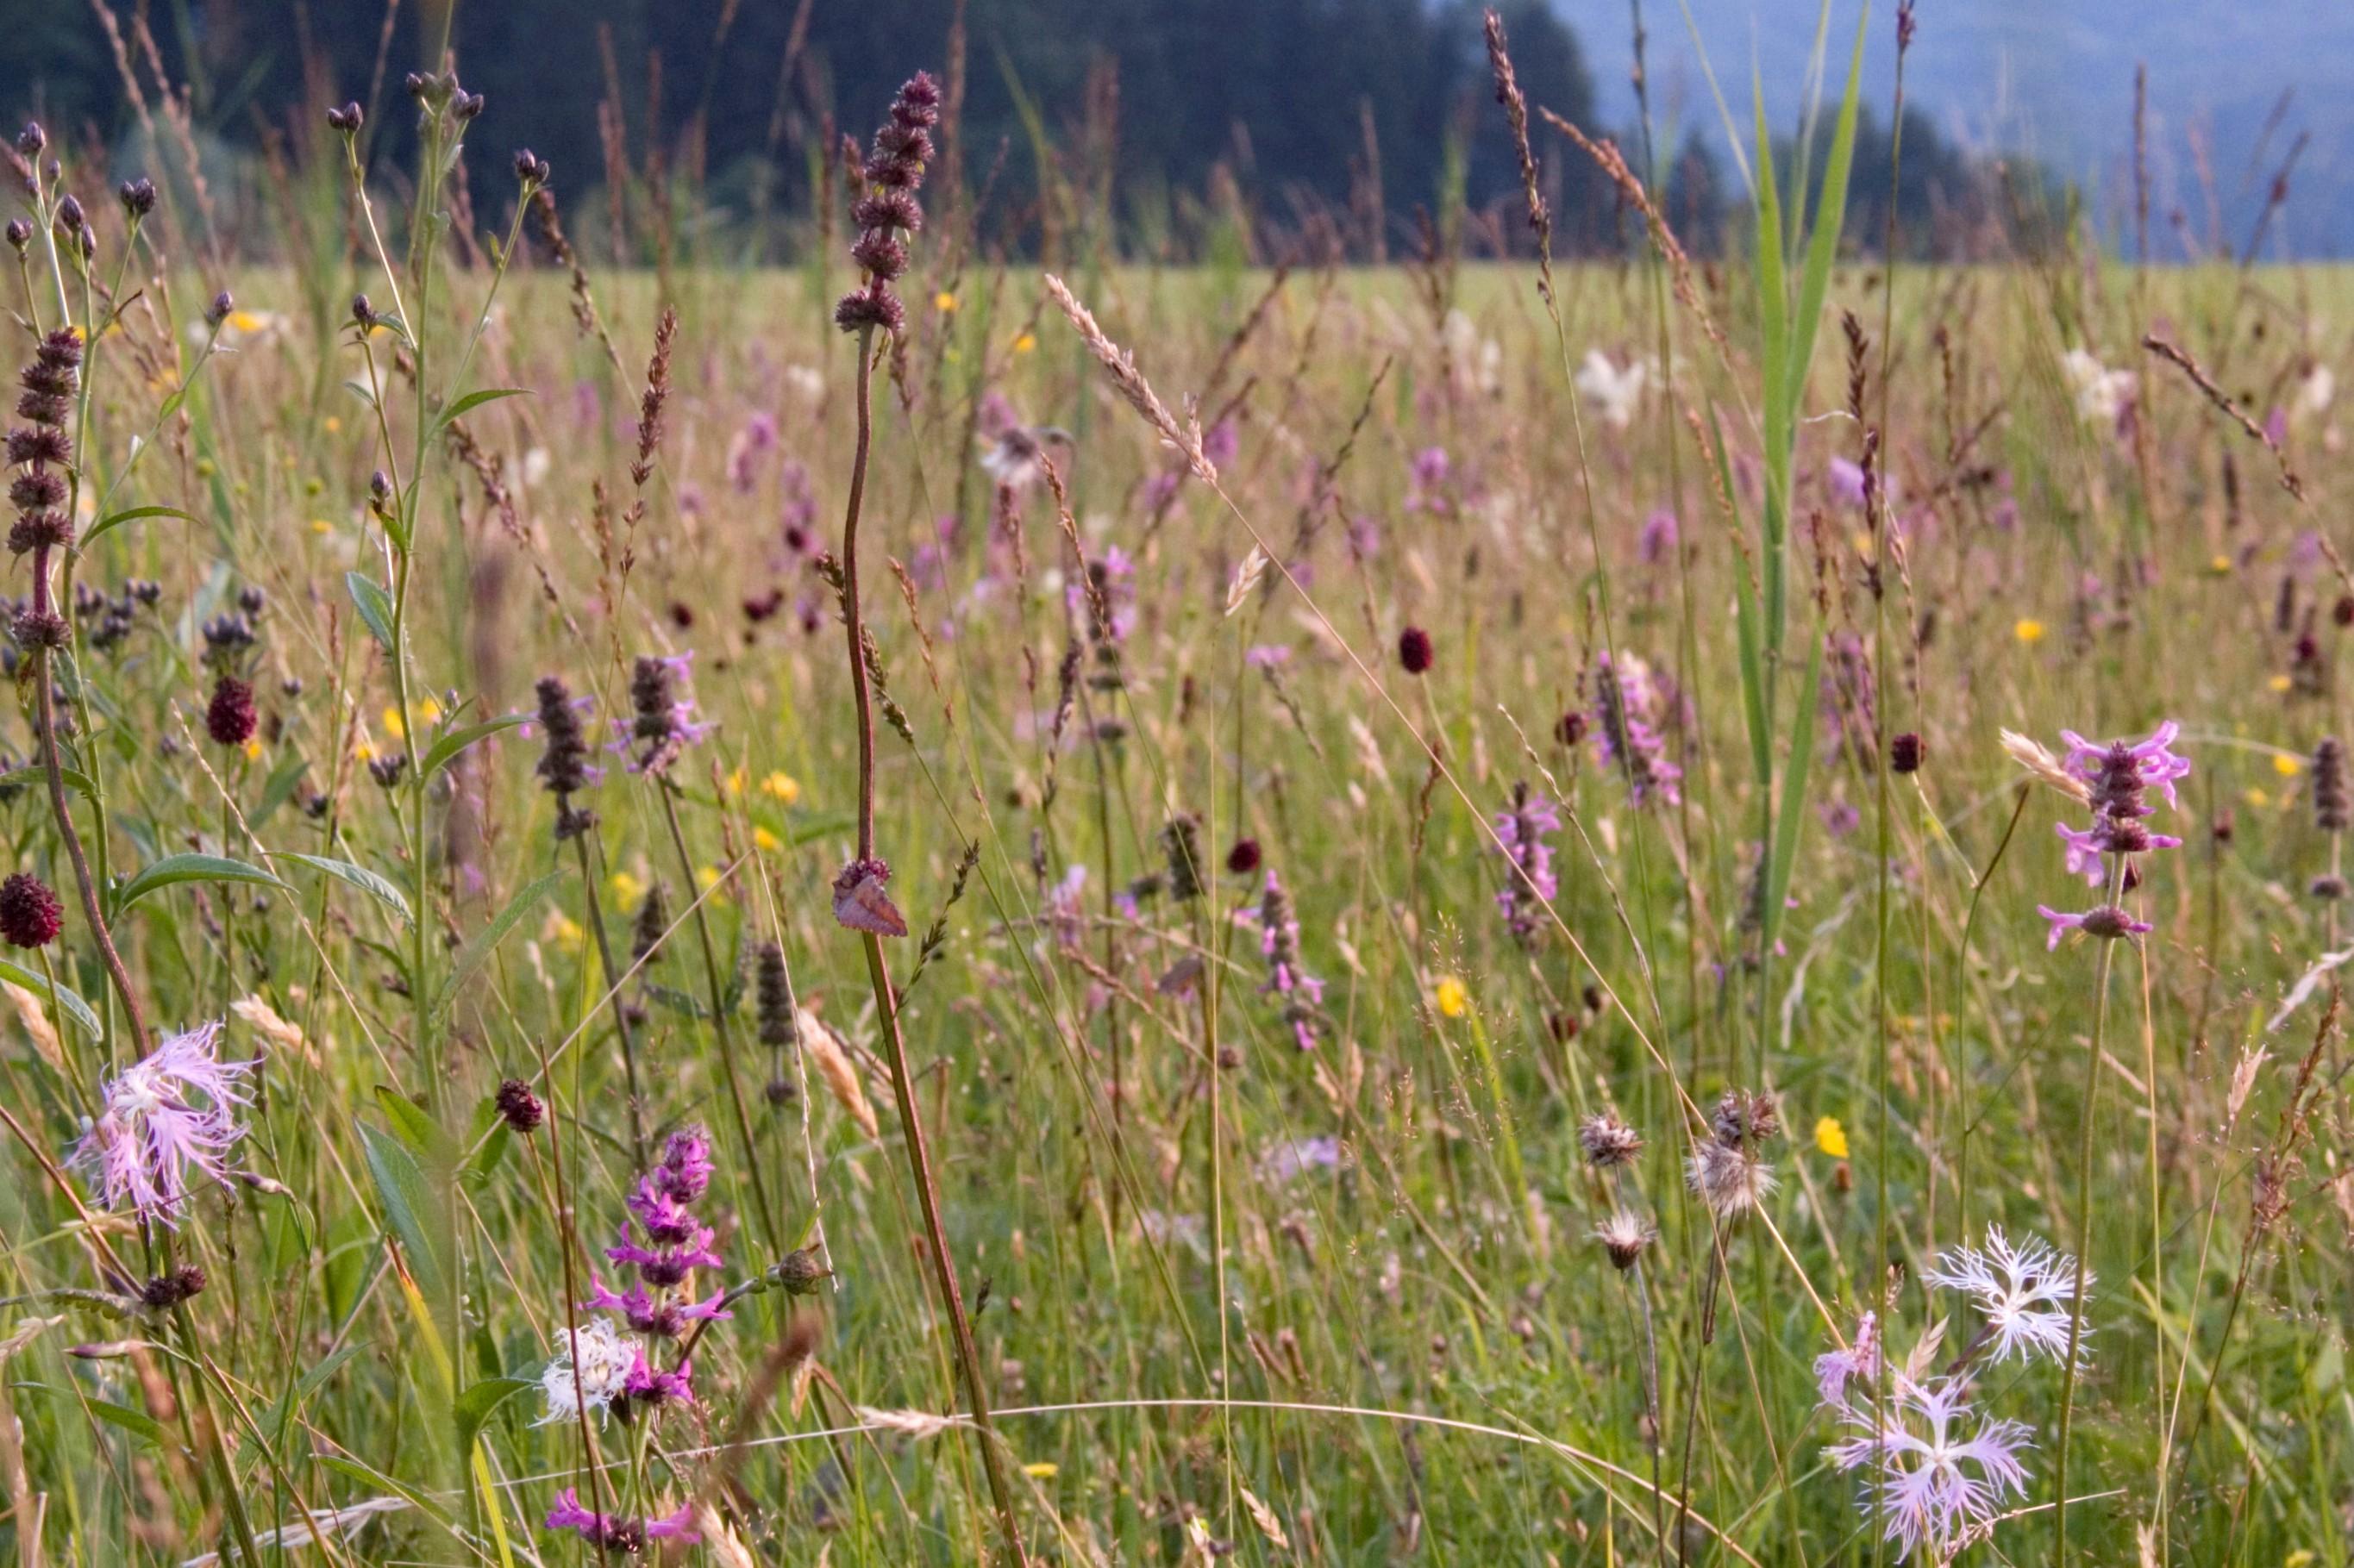  Beim Spaziergang um die Osterseen bieten Pfeifengras-Wiesen durch ihren Blüten- und Insektenreichtum ein besonderes Naturerlebnis.